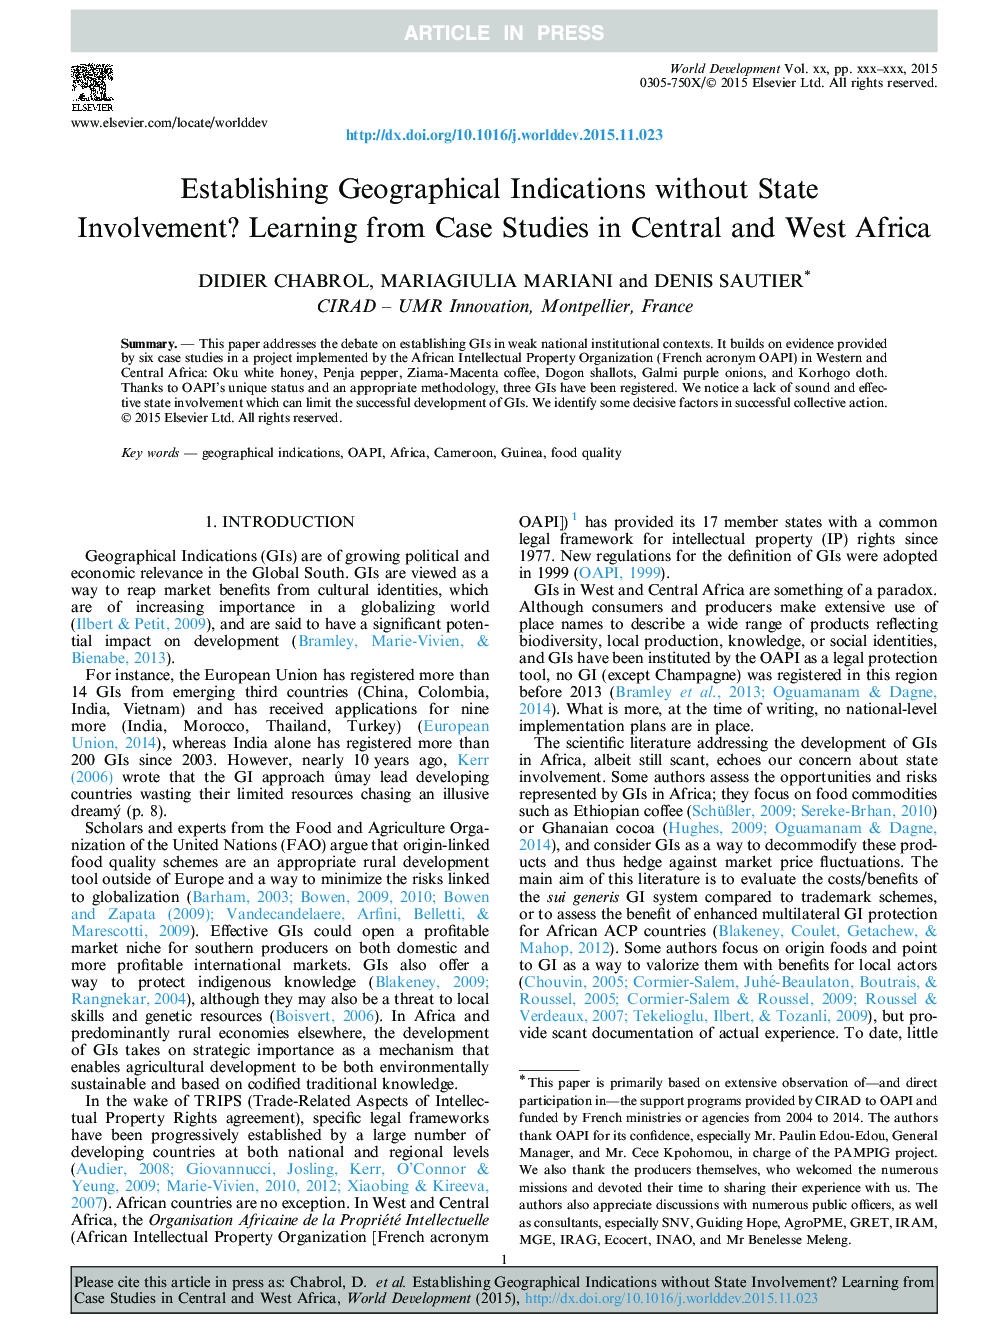 ایجاد علائم جغرافیایی بدون دخالت دولت؟ یادگیری از مطالعات موردی در مرکز و غرب آفریقا 